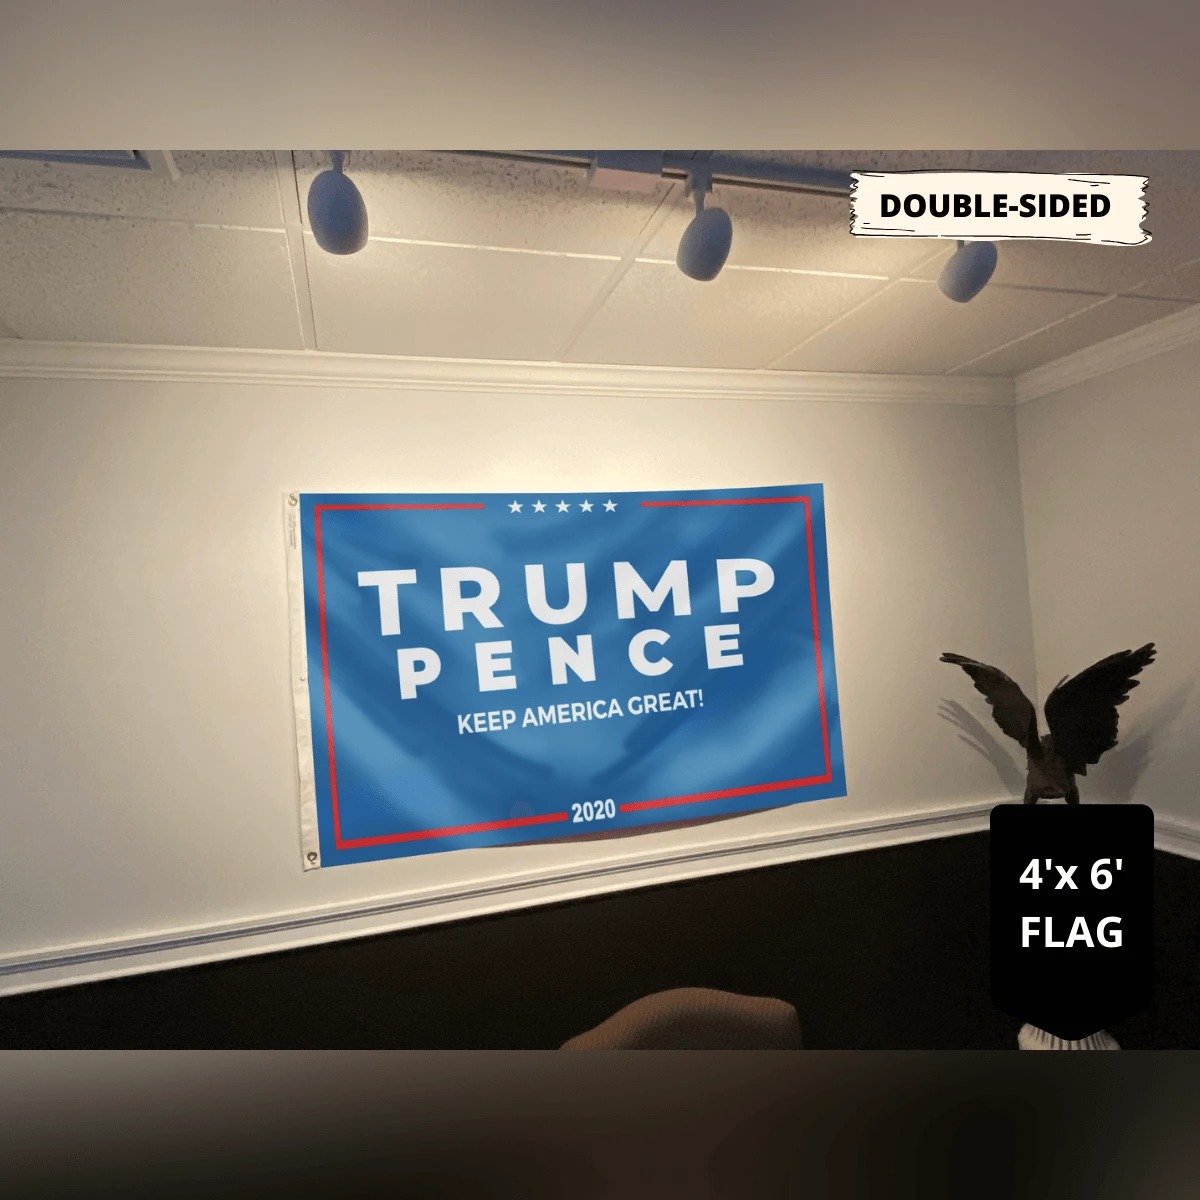 Trump pence keep America great flag4